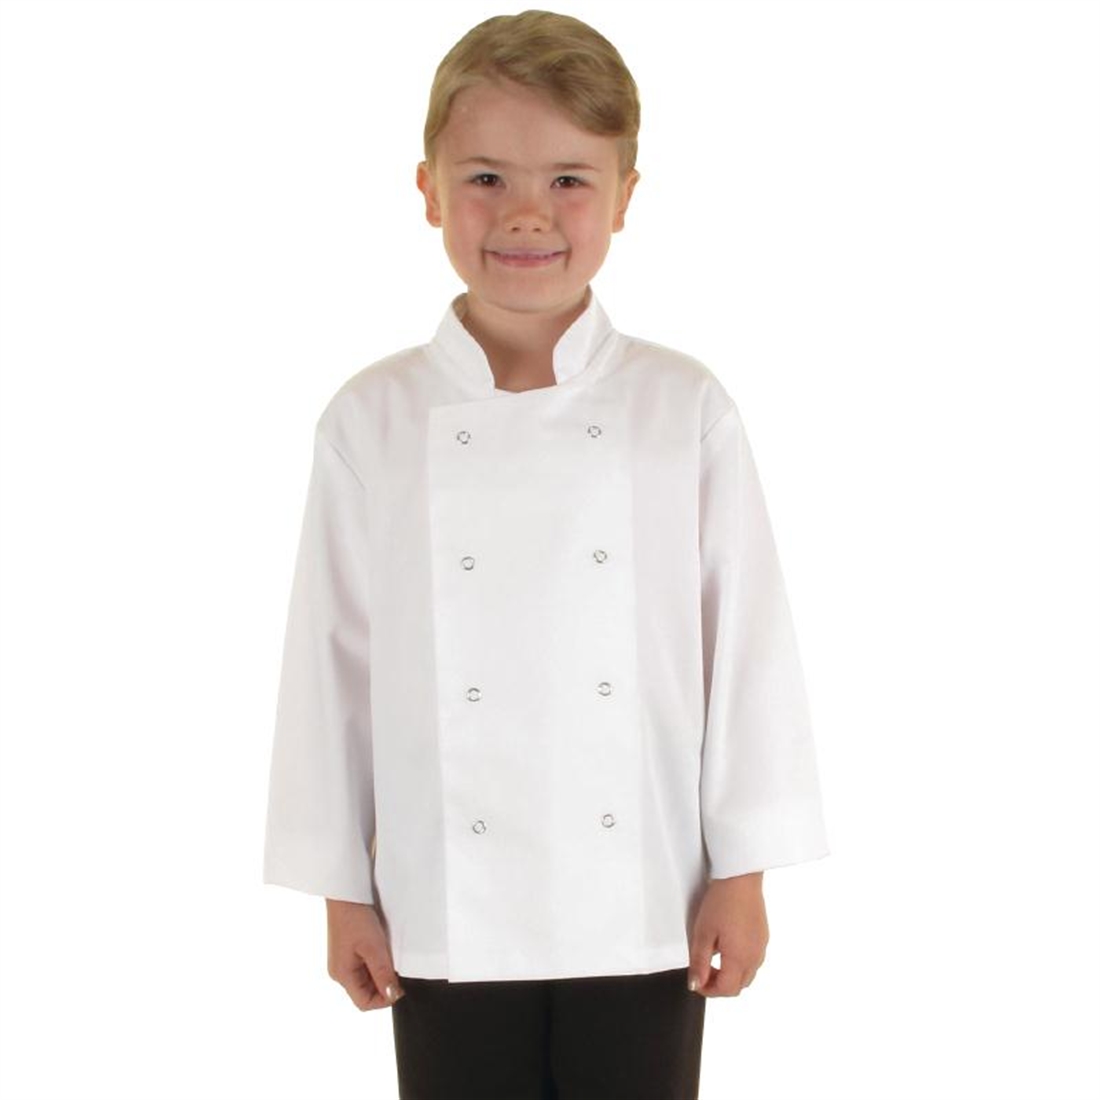 Whites Childrens Chef Jacket White S